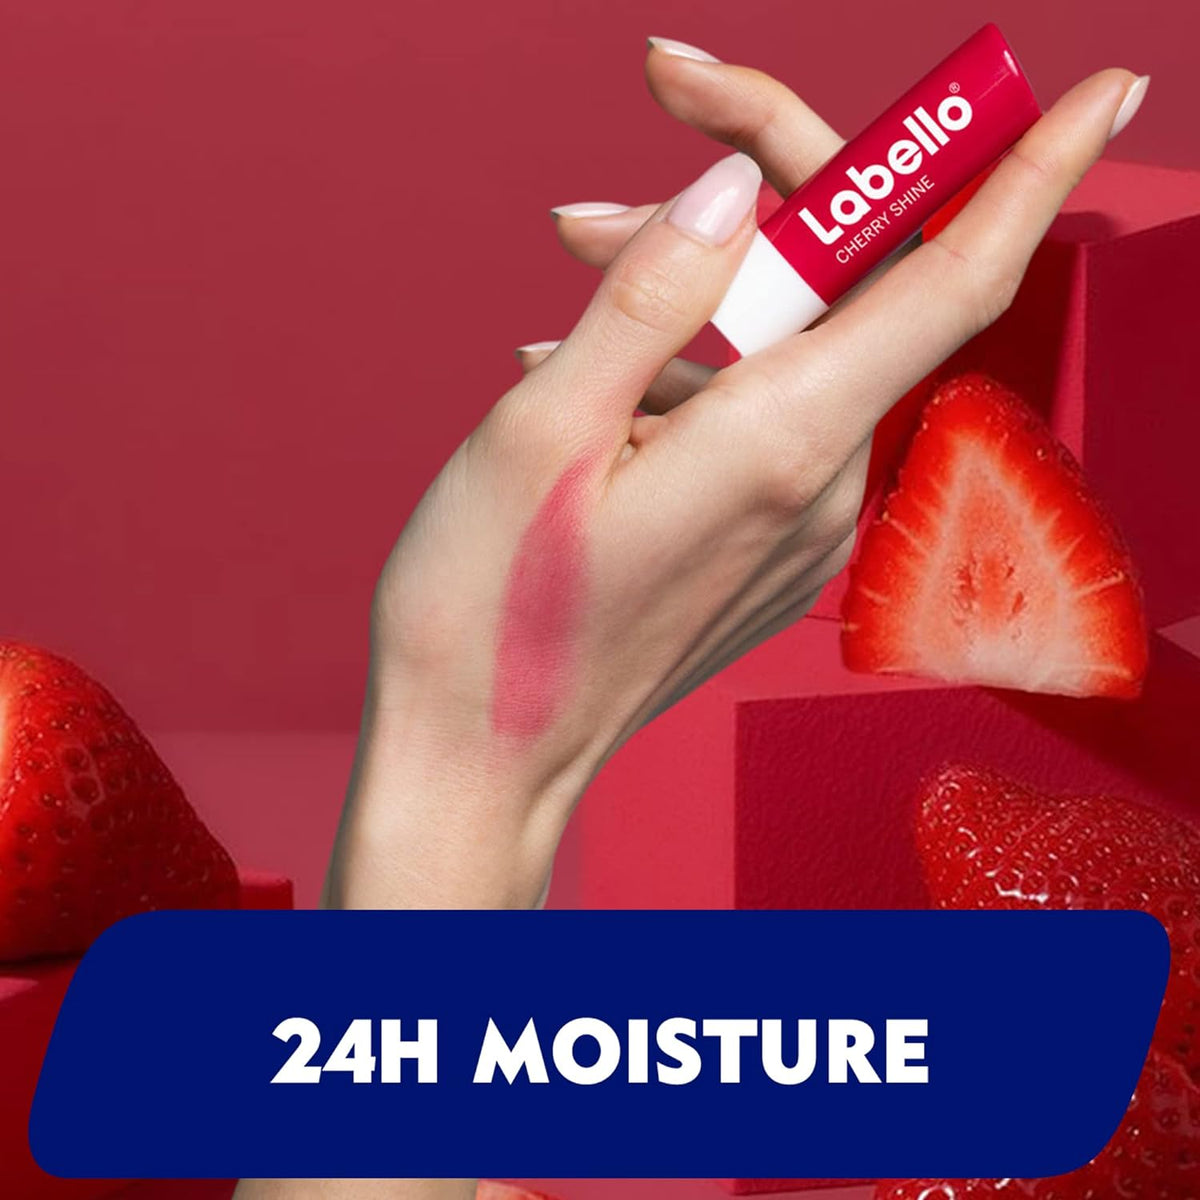 Labello Lip Balm, Moisturising Lip Care, Strawberry Shine, 4.8g